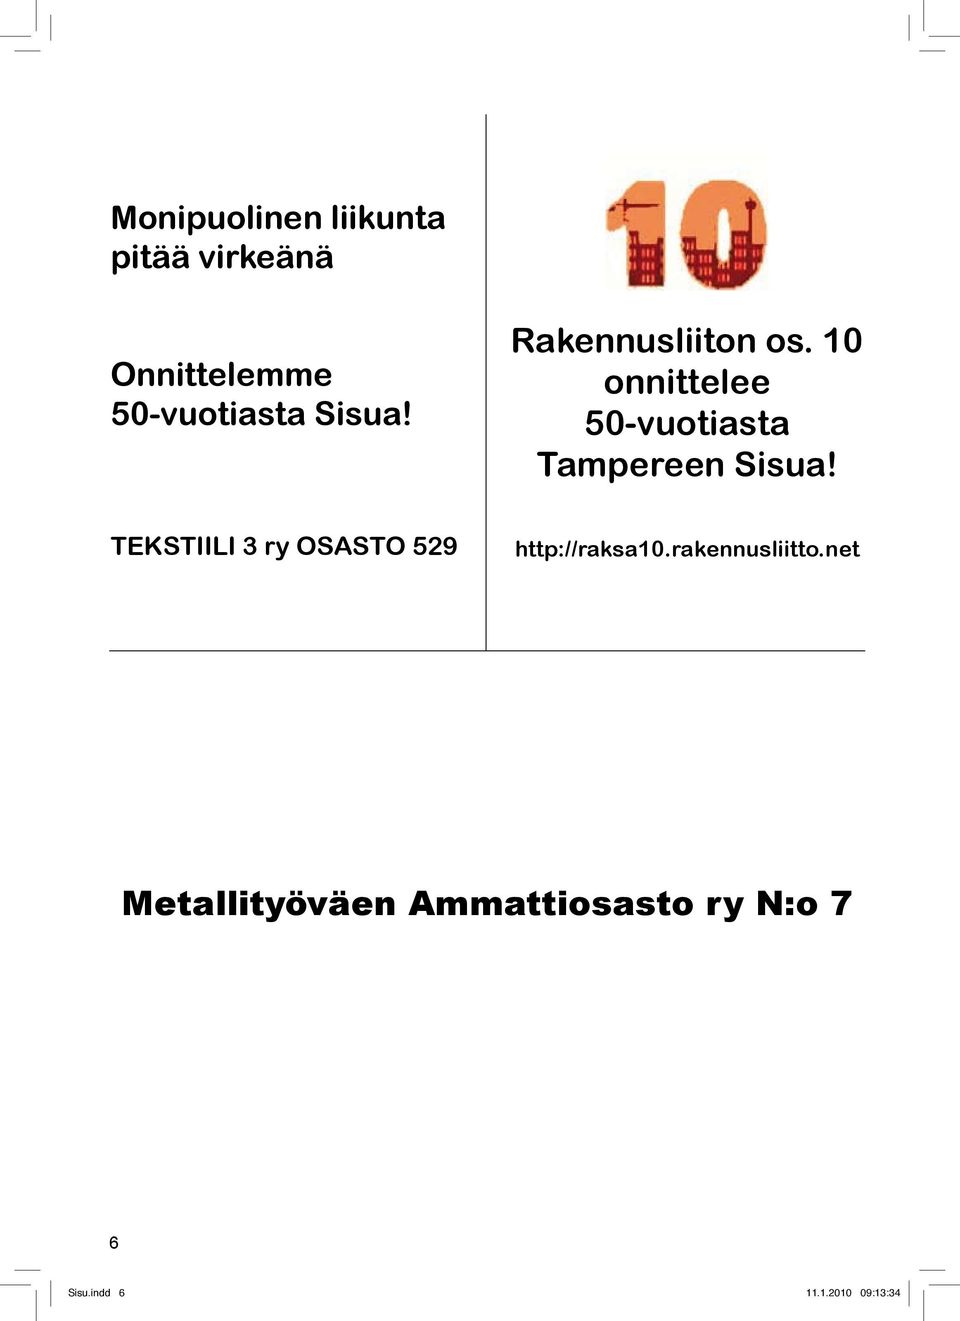 10 onnittelee 50-vuotiasta Tampereen Sisua!